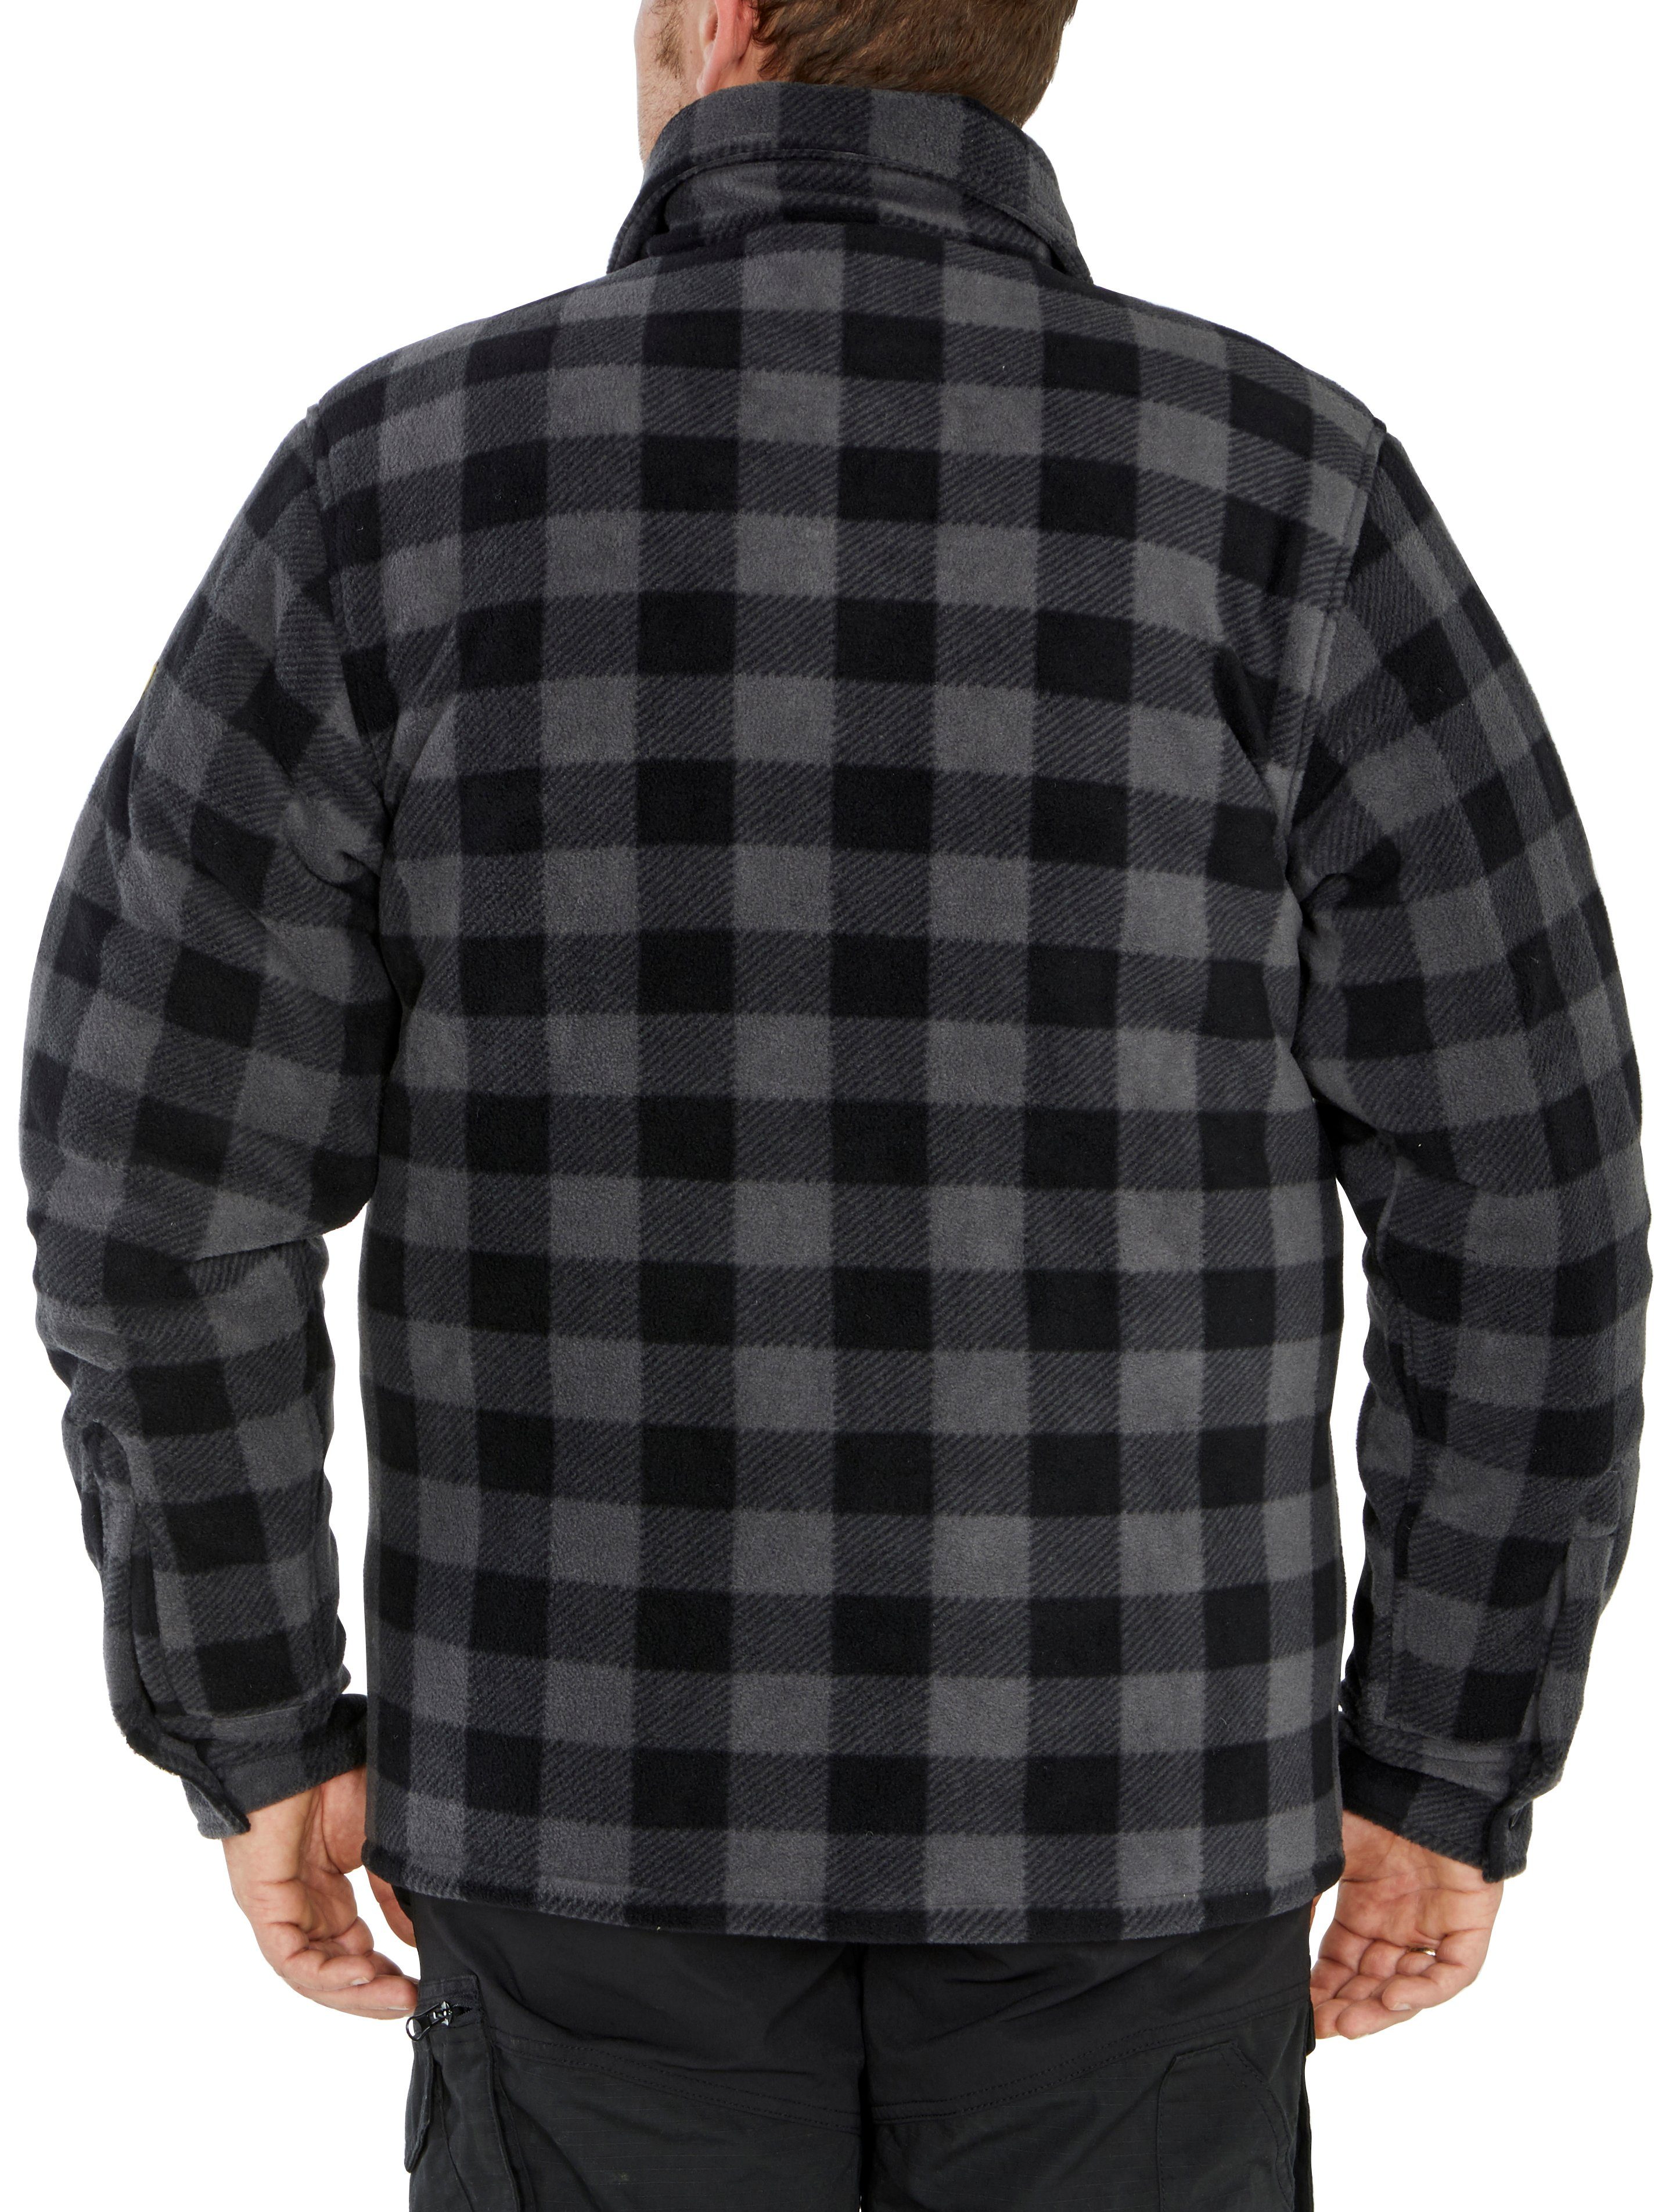 grau-schwarz Country zu Flanellhemd offen (als oder Jacke warm Taschen, tragen) Hemd gefüttert, Rücken, verlängertem mit Northern mit 5 zugeknöpft Flanellstoff